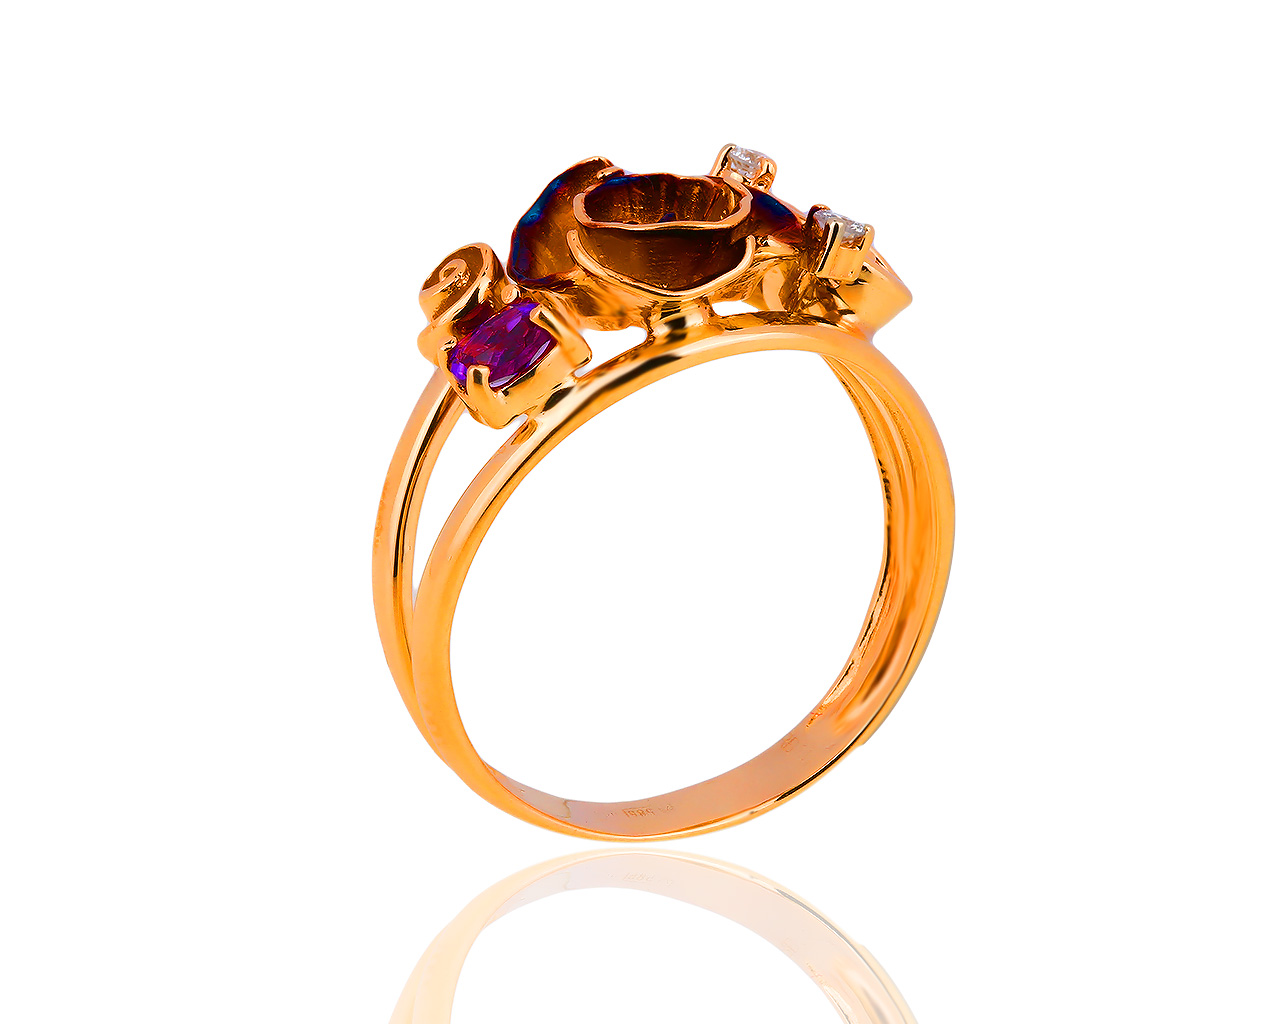 Оригинальное золотое кольцо с аметистом и бриллиантами Roberto Bravo